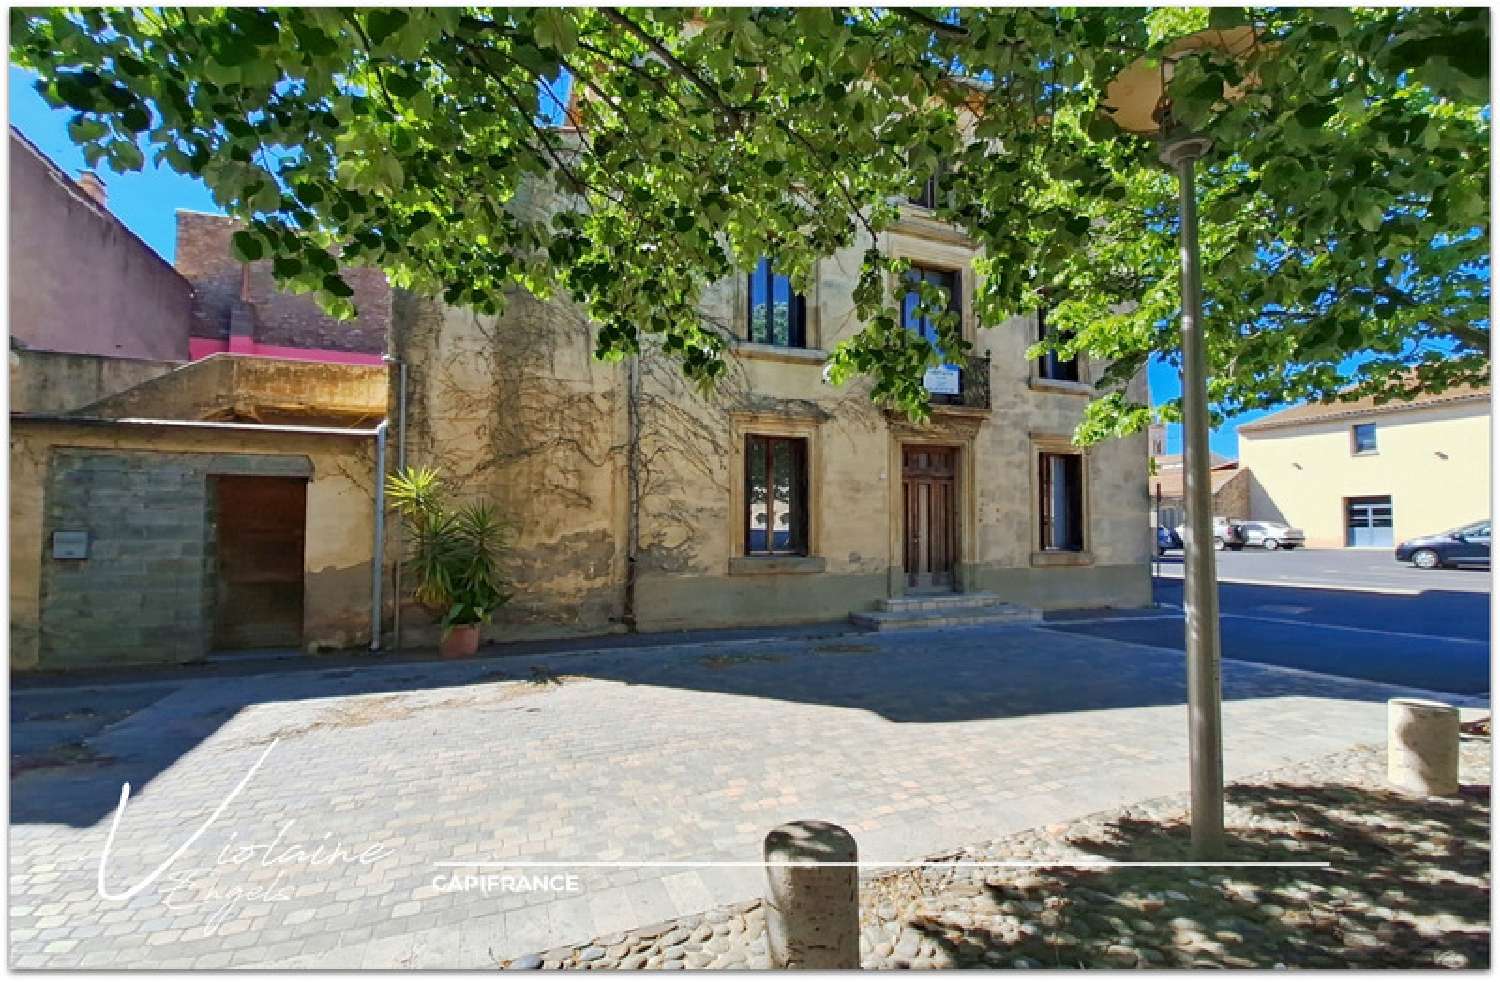  à vendre maison de village Olonzac Hérault 1